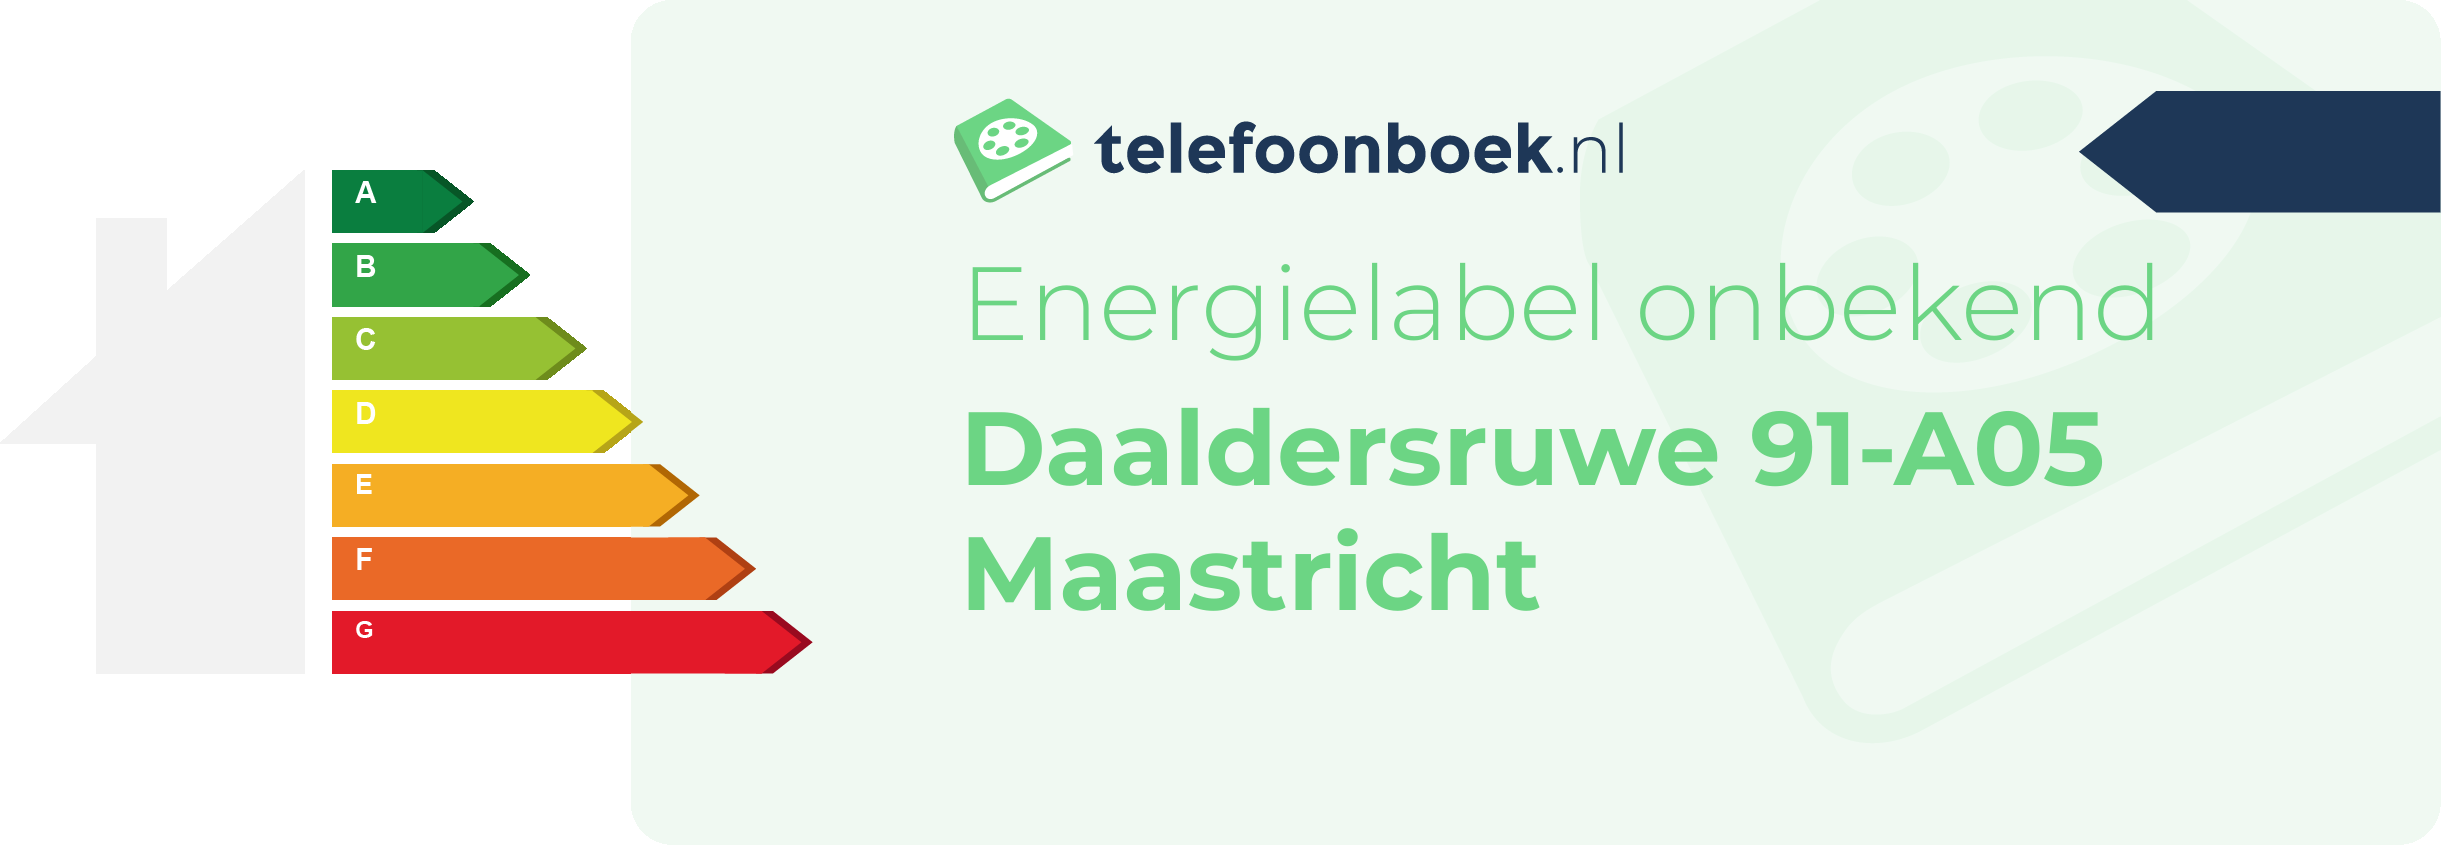 Energielabel Daaldersruwe 91-A05 Maastricht